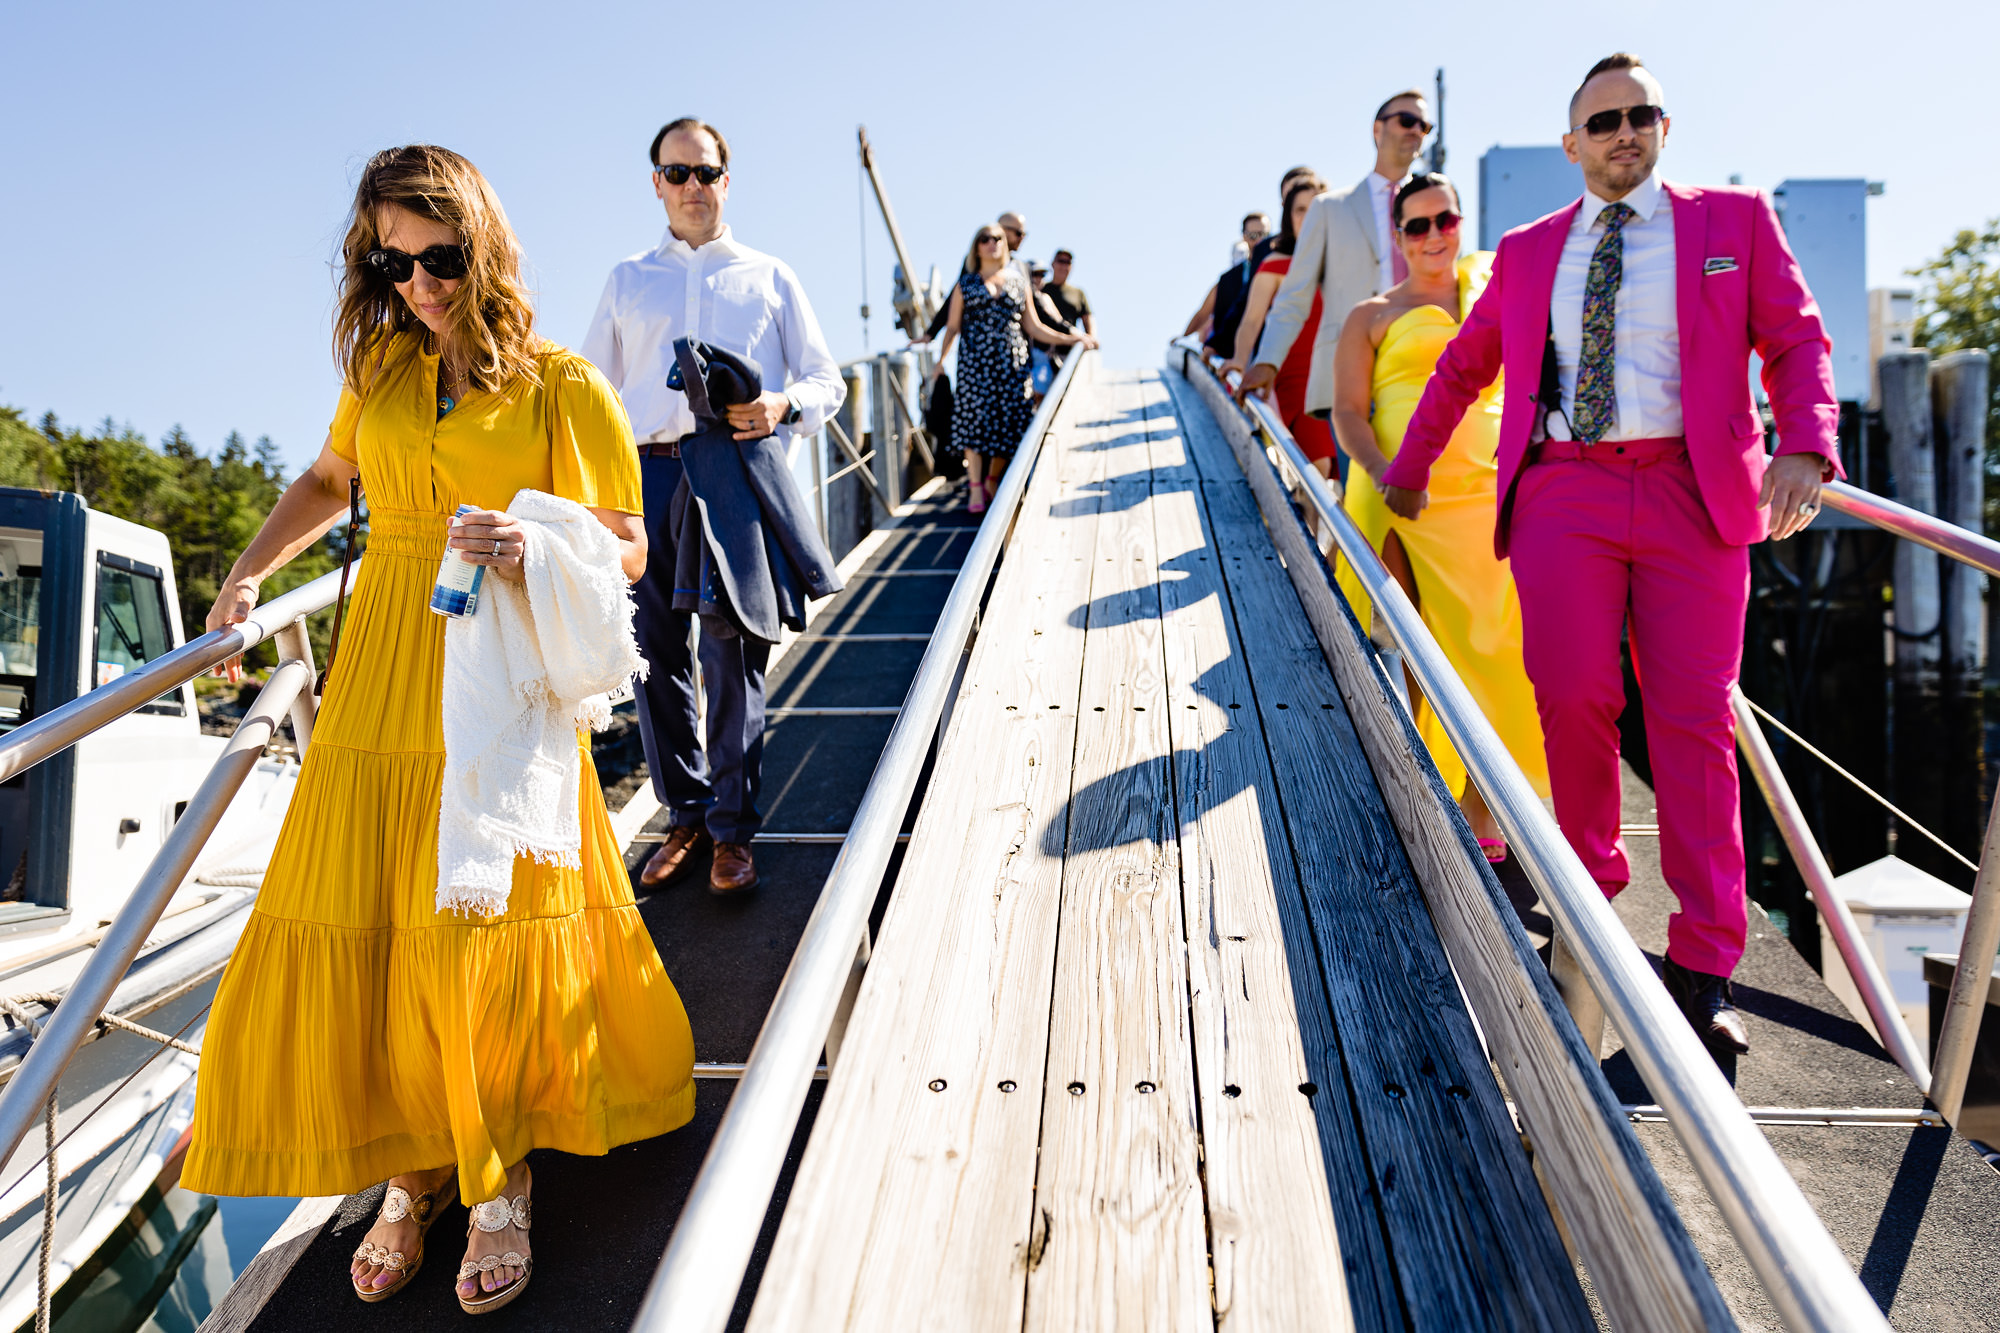 Guests walk down the ramp at Northeast Harbor Marina to board the Sea Princess